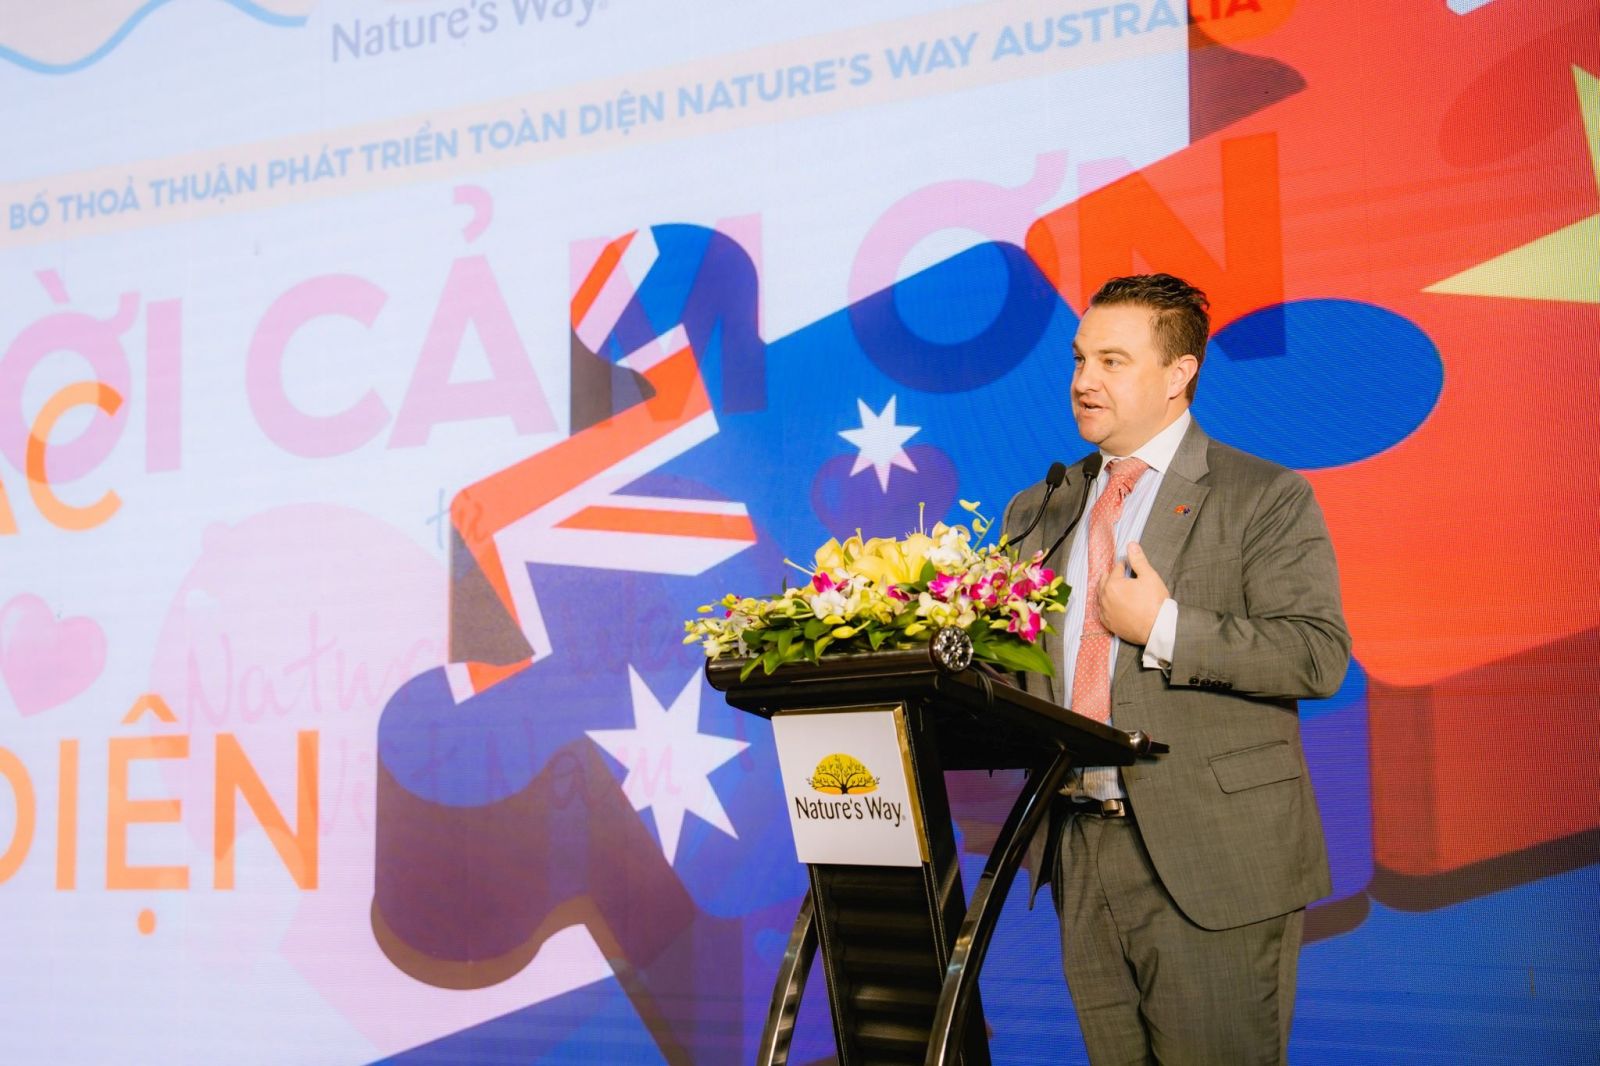 Nature's Way Việt Nam chính thức ký kết hợp tác toàn diện với Nature’s Way Australia